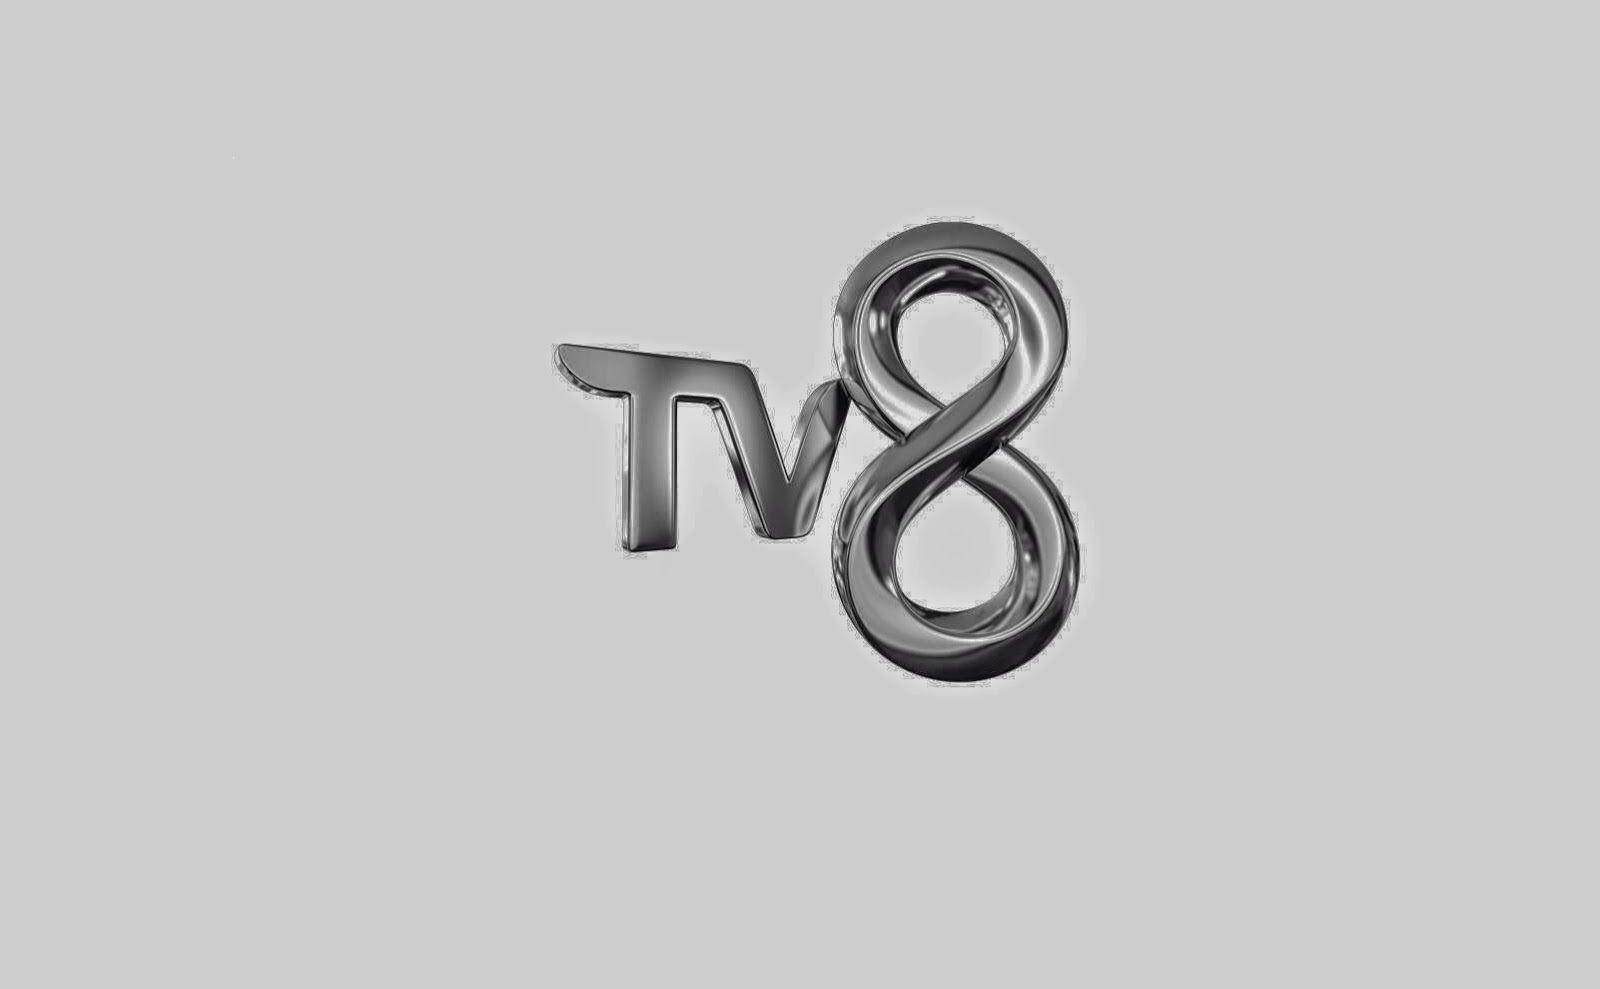 Tv8 canli yayin kesintisiz izle. TV 8. Tv8 Телеканал. Tv8 логотип. Tv8 Canli.